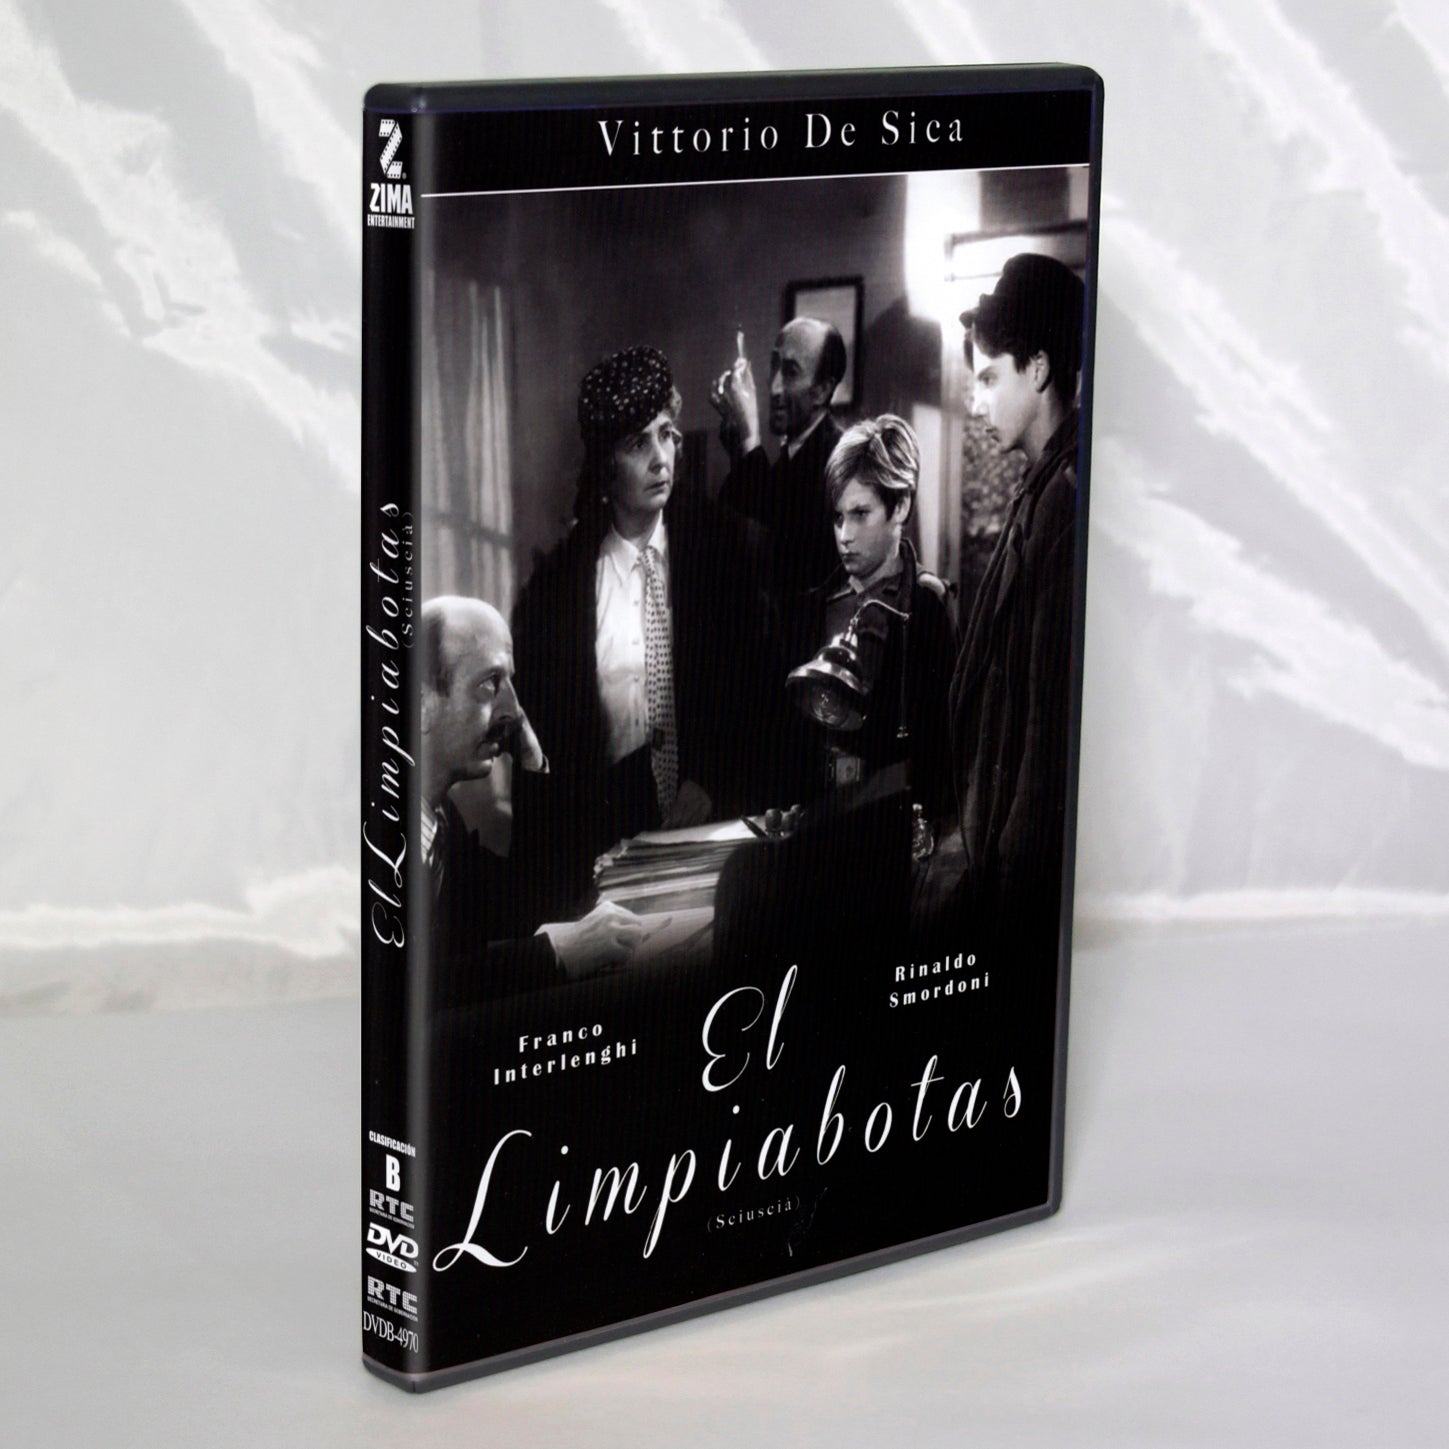 El Limpiabotas Blu-ray Una pelicula de Vittorio de Sica